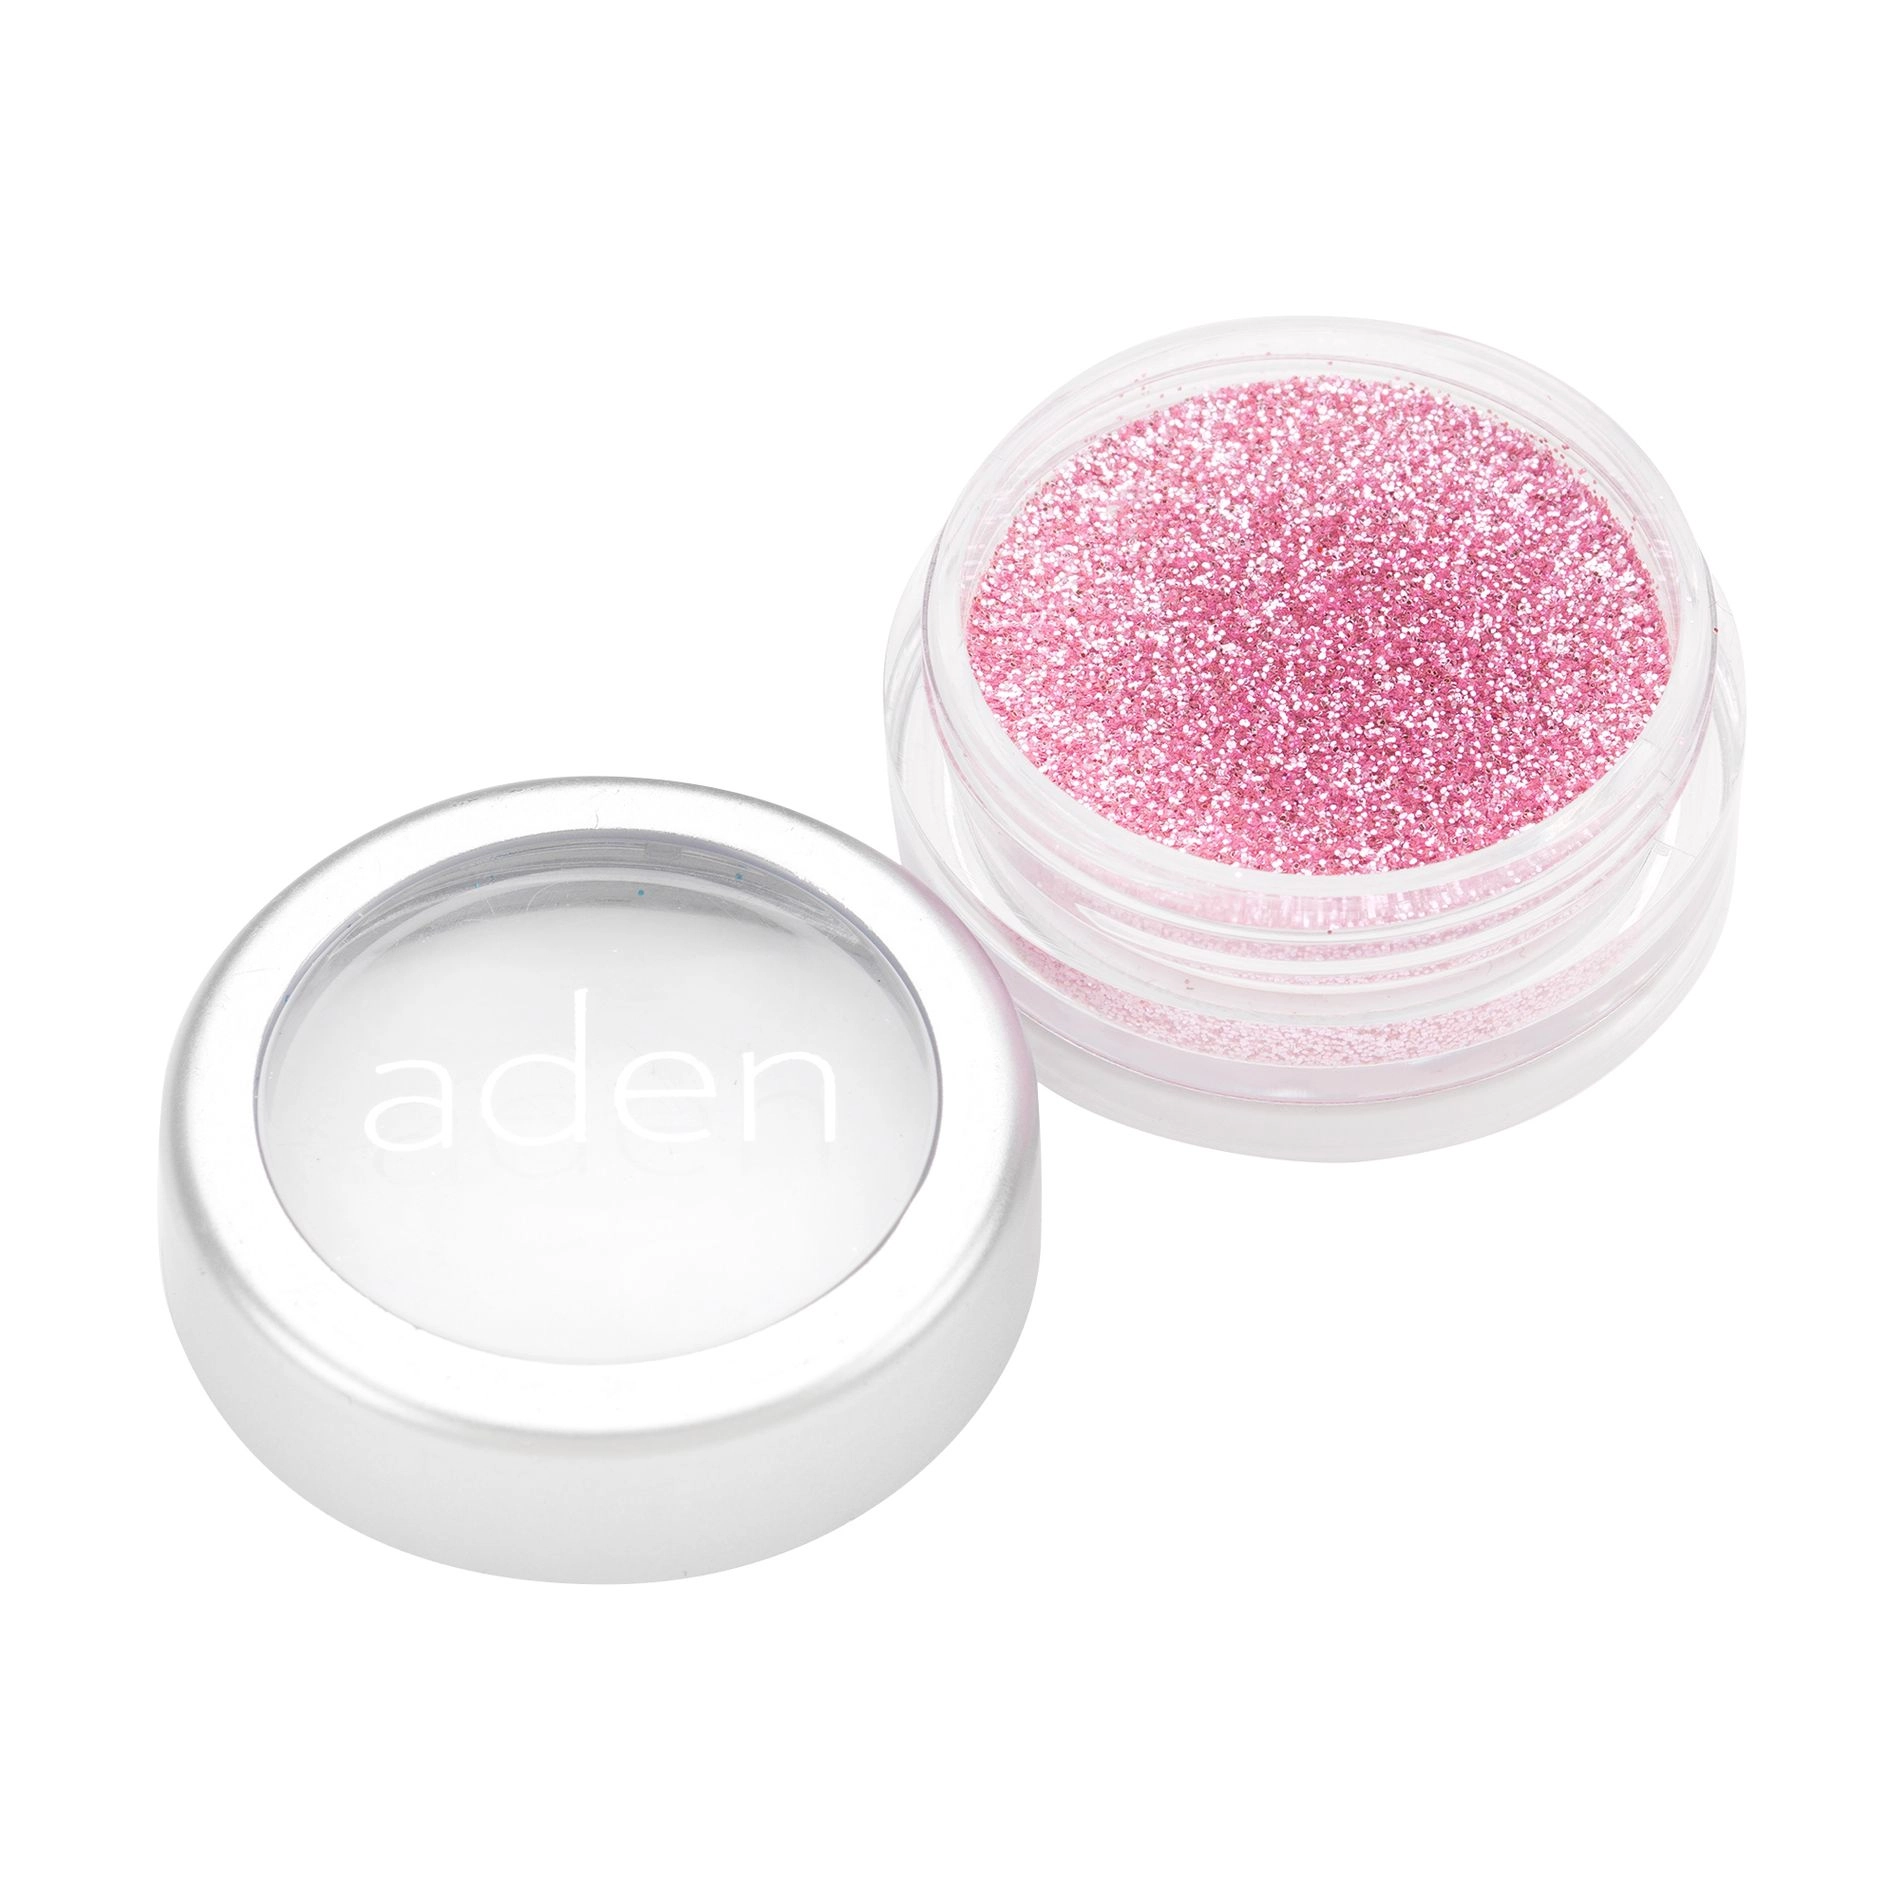 Aden Розсипчастий глітер для обличчя Glitter Powder 12 Candy Pink, 5 г - фото N1